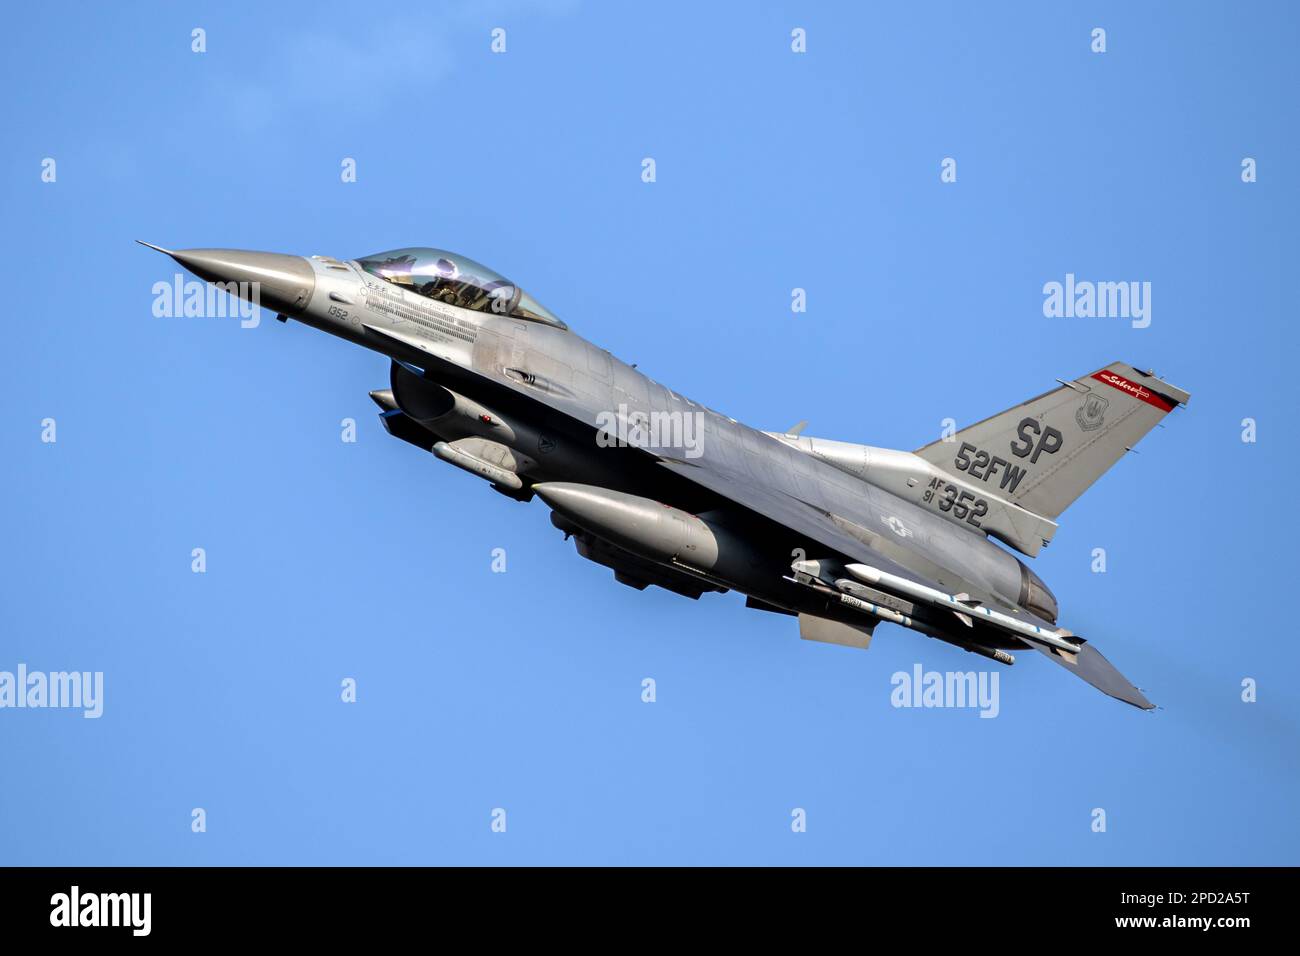 US Air Force F-16 Fighting Falcon Fighter Jet de l'aile 52nd Fighter basée à la base aérienne de Spangdahlem en vol. Spangdahlem, Allemagne - 29 août, 20 Banque D'Images